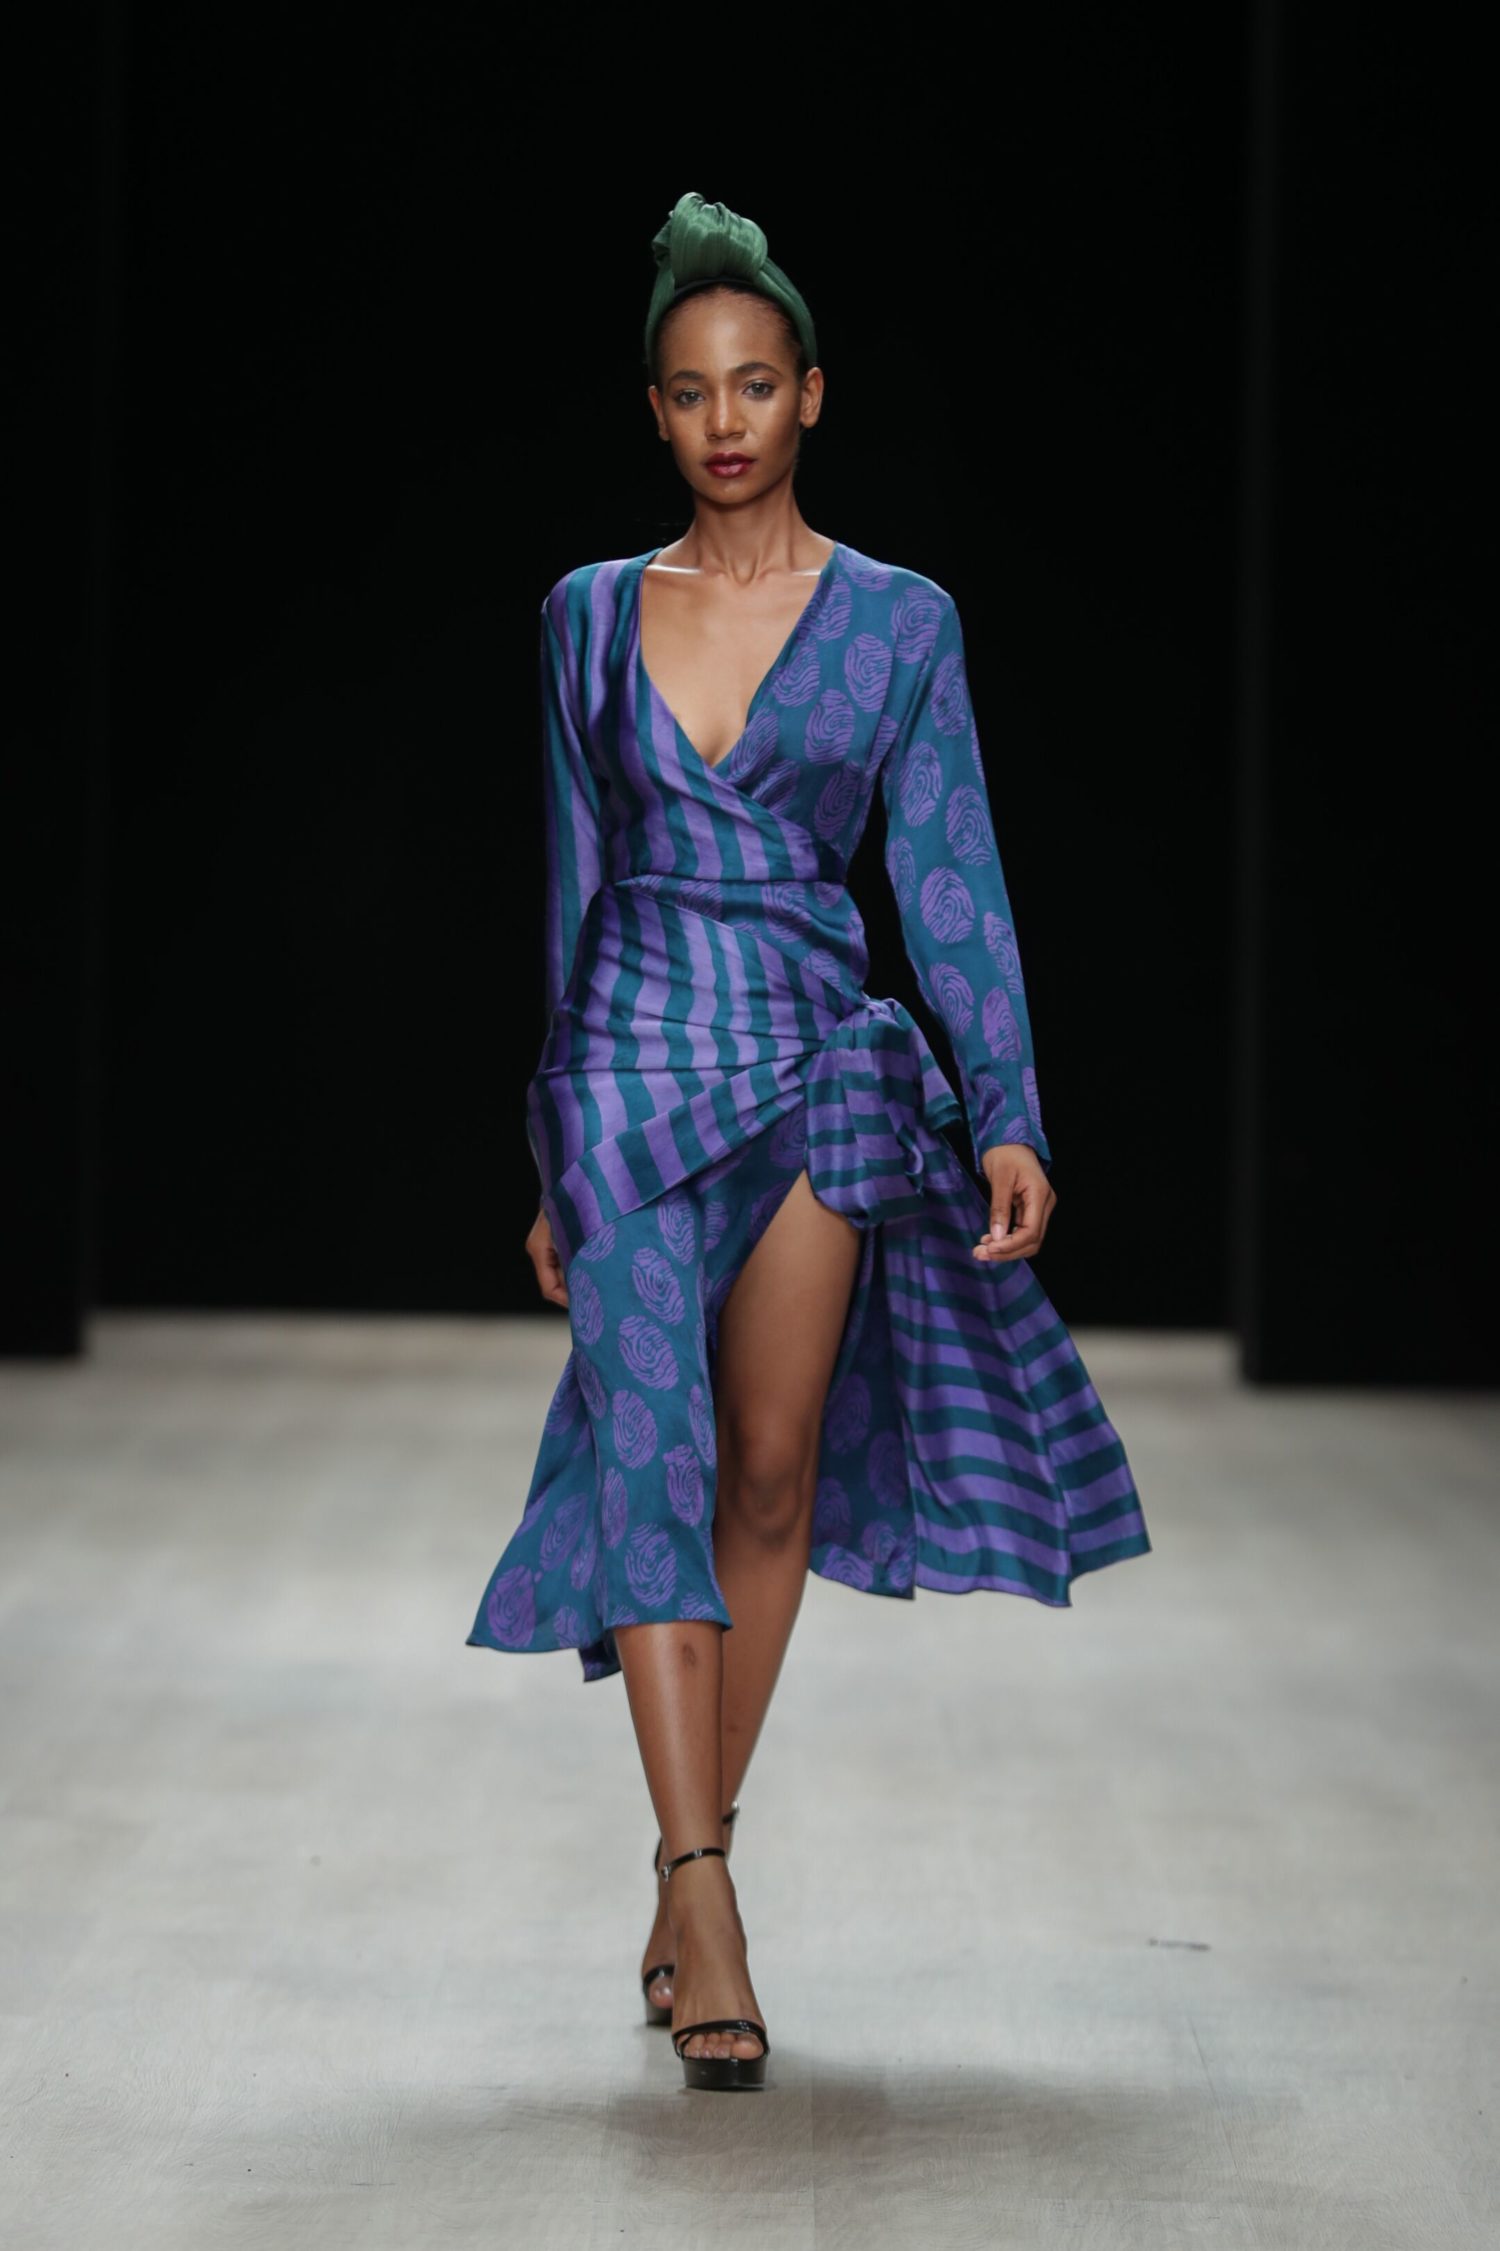 ARISE Fashion Week 2019 | Tiffany Amber